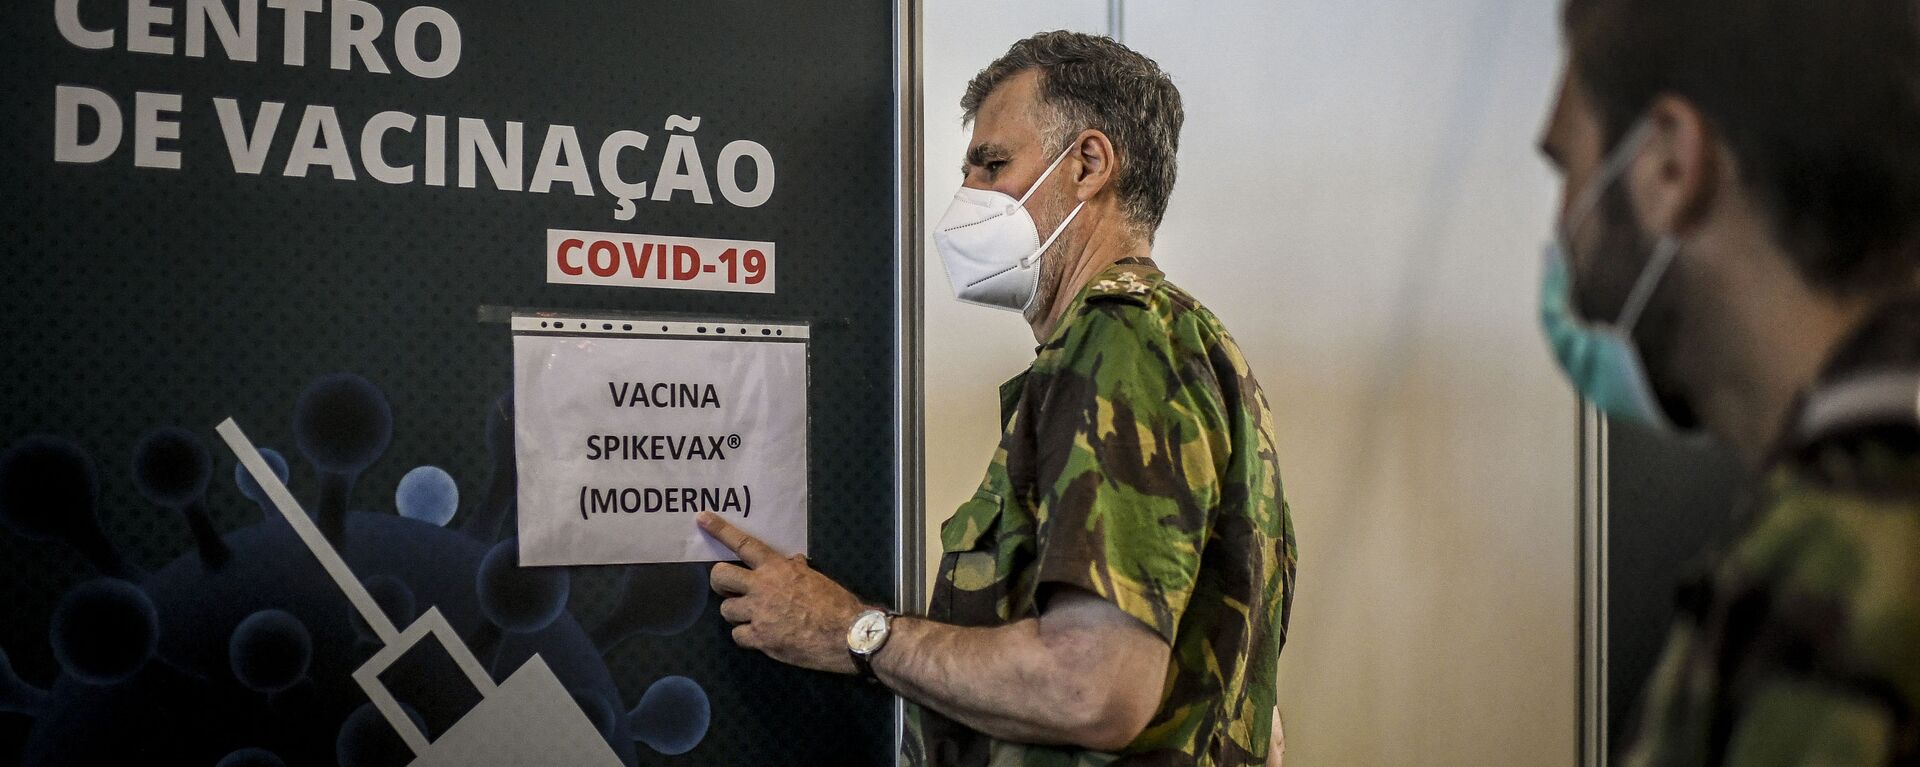 O vice-almirante Henrique Gouveia e Melo visita um centro de vacinação contra a COVID-19 em Lisboa, em 11 de setembro de 2021 - Sputnik Brasil, 1920, 17.09.2021